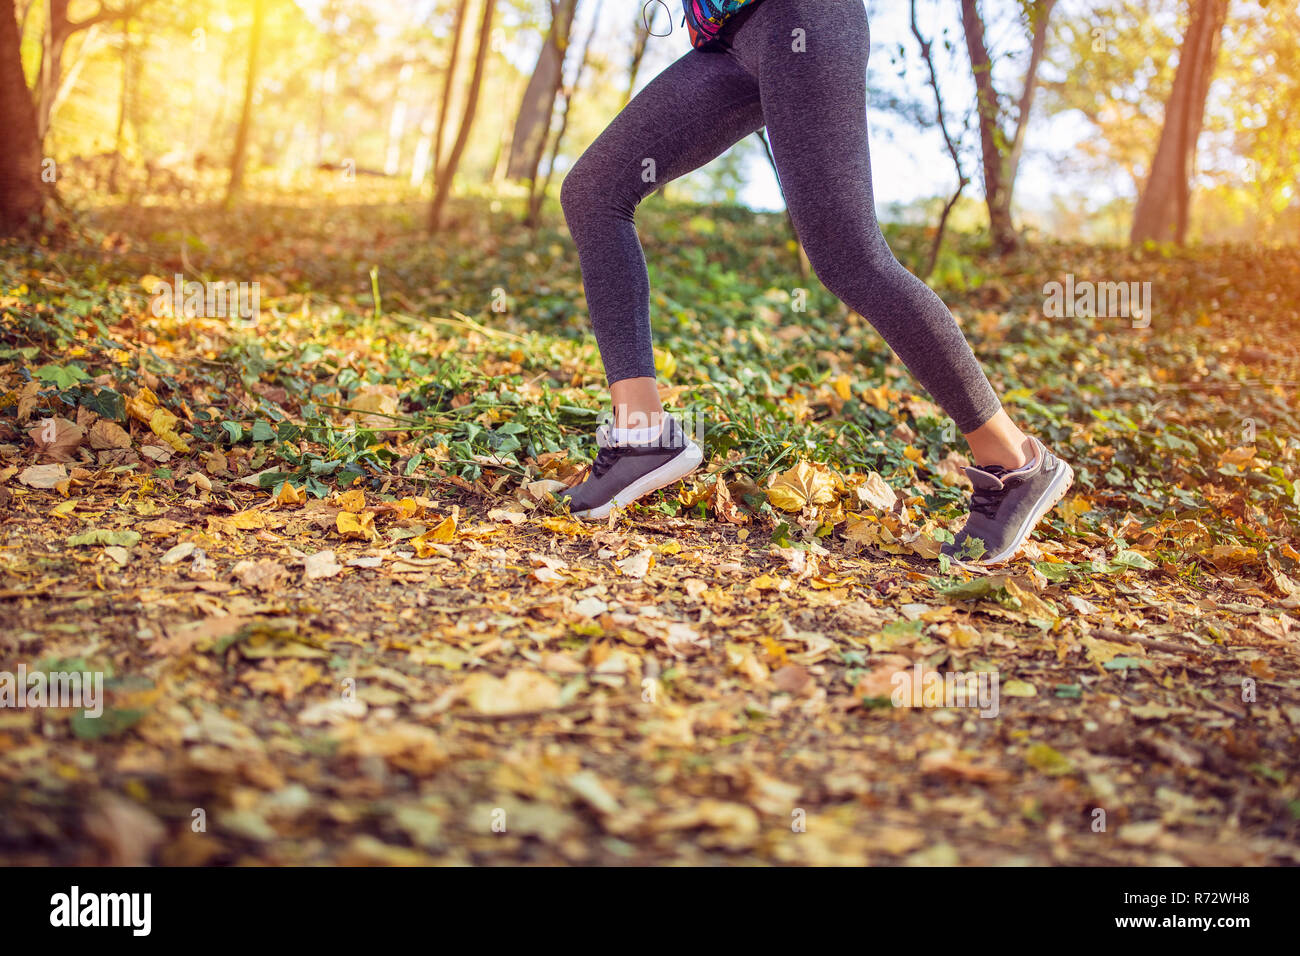 Joggen Sport Fitness Frau. In der Nähe der weiblichen Beine und Schuhe.  Junge Mädchen Athleten fitness runner Laufschuhe. Trail Running Konzept  Stockfotografie - Alamy